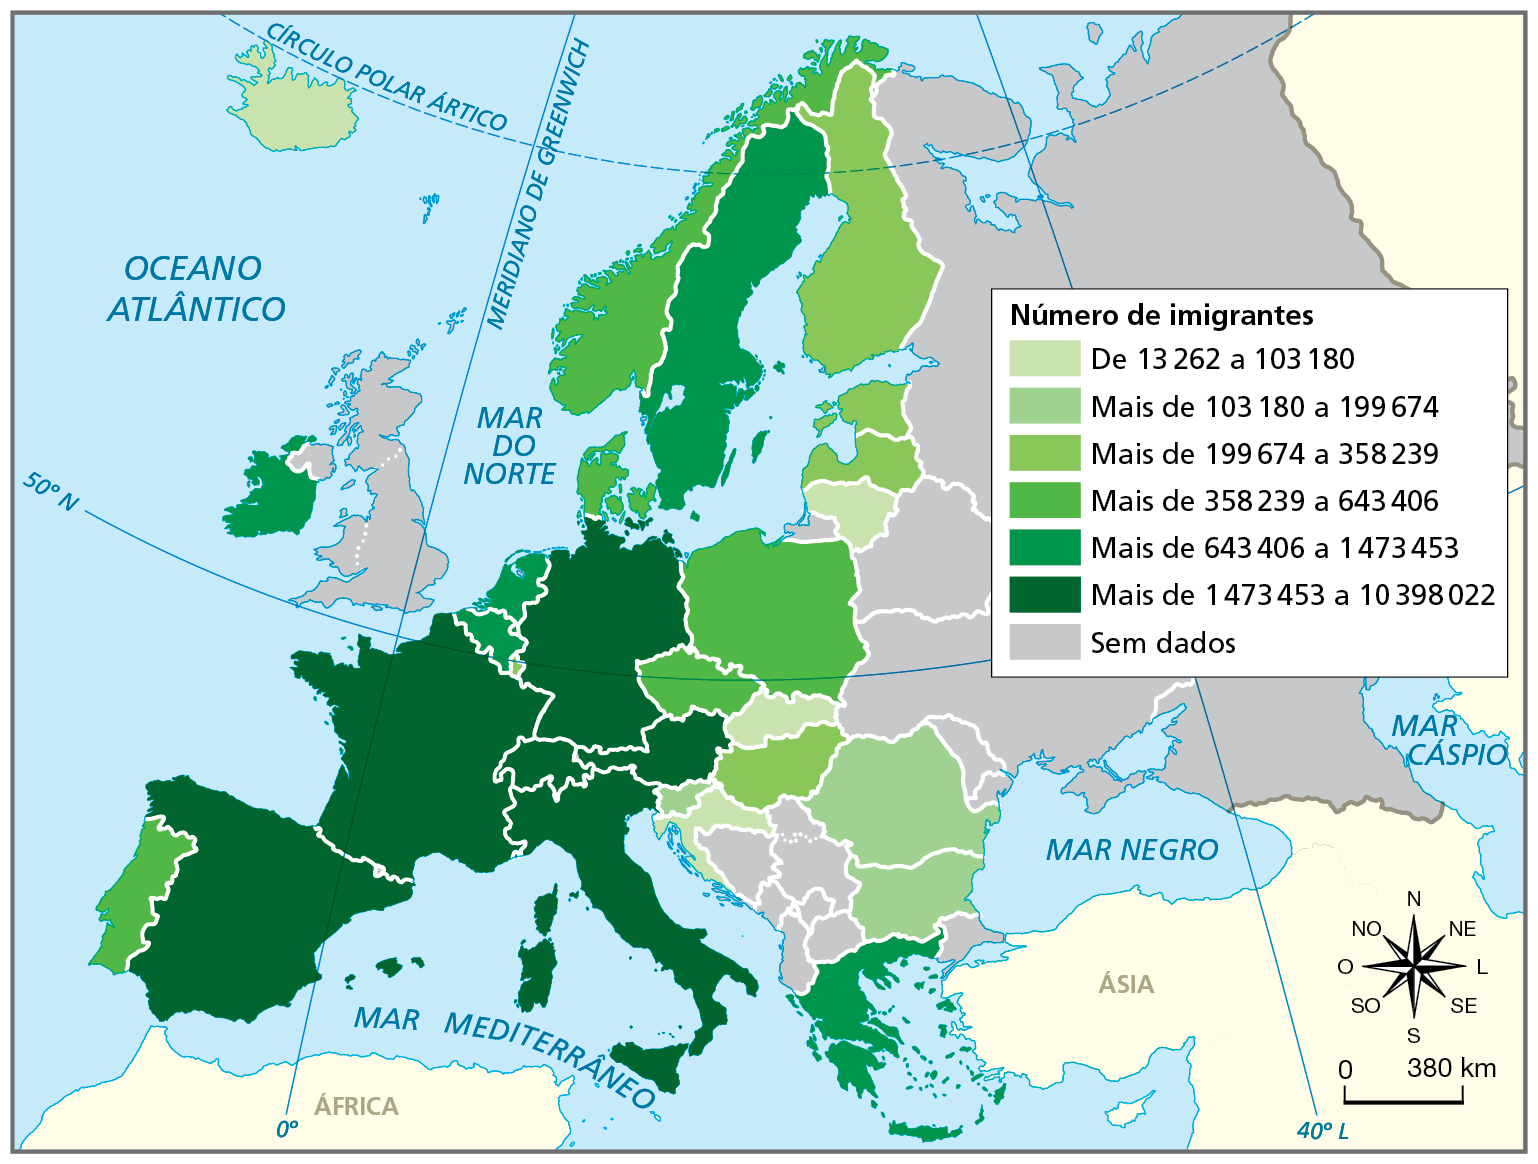 Mapa. Europa: imigrantes por país,  2020. Mapa representando o número de imigrantes em cada país do continente europeu.
De 13.262 a 103.180 imigrantes: Lituânia, Eslováquia, Croácia e Islândia.
Mais de 103.180 a 199.674 imigrantes: Eslovênia, Romênia e Bulgária. 
Mais de 199.674 a 358.239 imigrantes: Finlândia, Estônia, Letônia e Hungria. 
Mais de 358.239 a 643.406 imigrantes: Noruega, Portugal, Dinamarca, Polônia e República Tcheca.
Mais de 643.406 a 1.473.453 imigrantes: Irlanda, Grécia, Suécia, Bélgica e Países Baixos. 
Mais de 1.473.453 a 10.398.022 imigrantes: Itália, Espanha, França, Alemanha, Áustria e Suíça.
Sem dados: os demais países europeus não citados anteriormente.
Na parte inferior, rosa dos ventos e escala de 0 a 380 quilômetros.